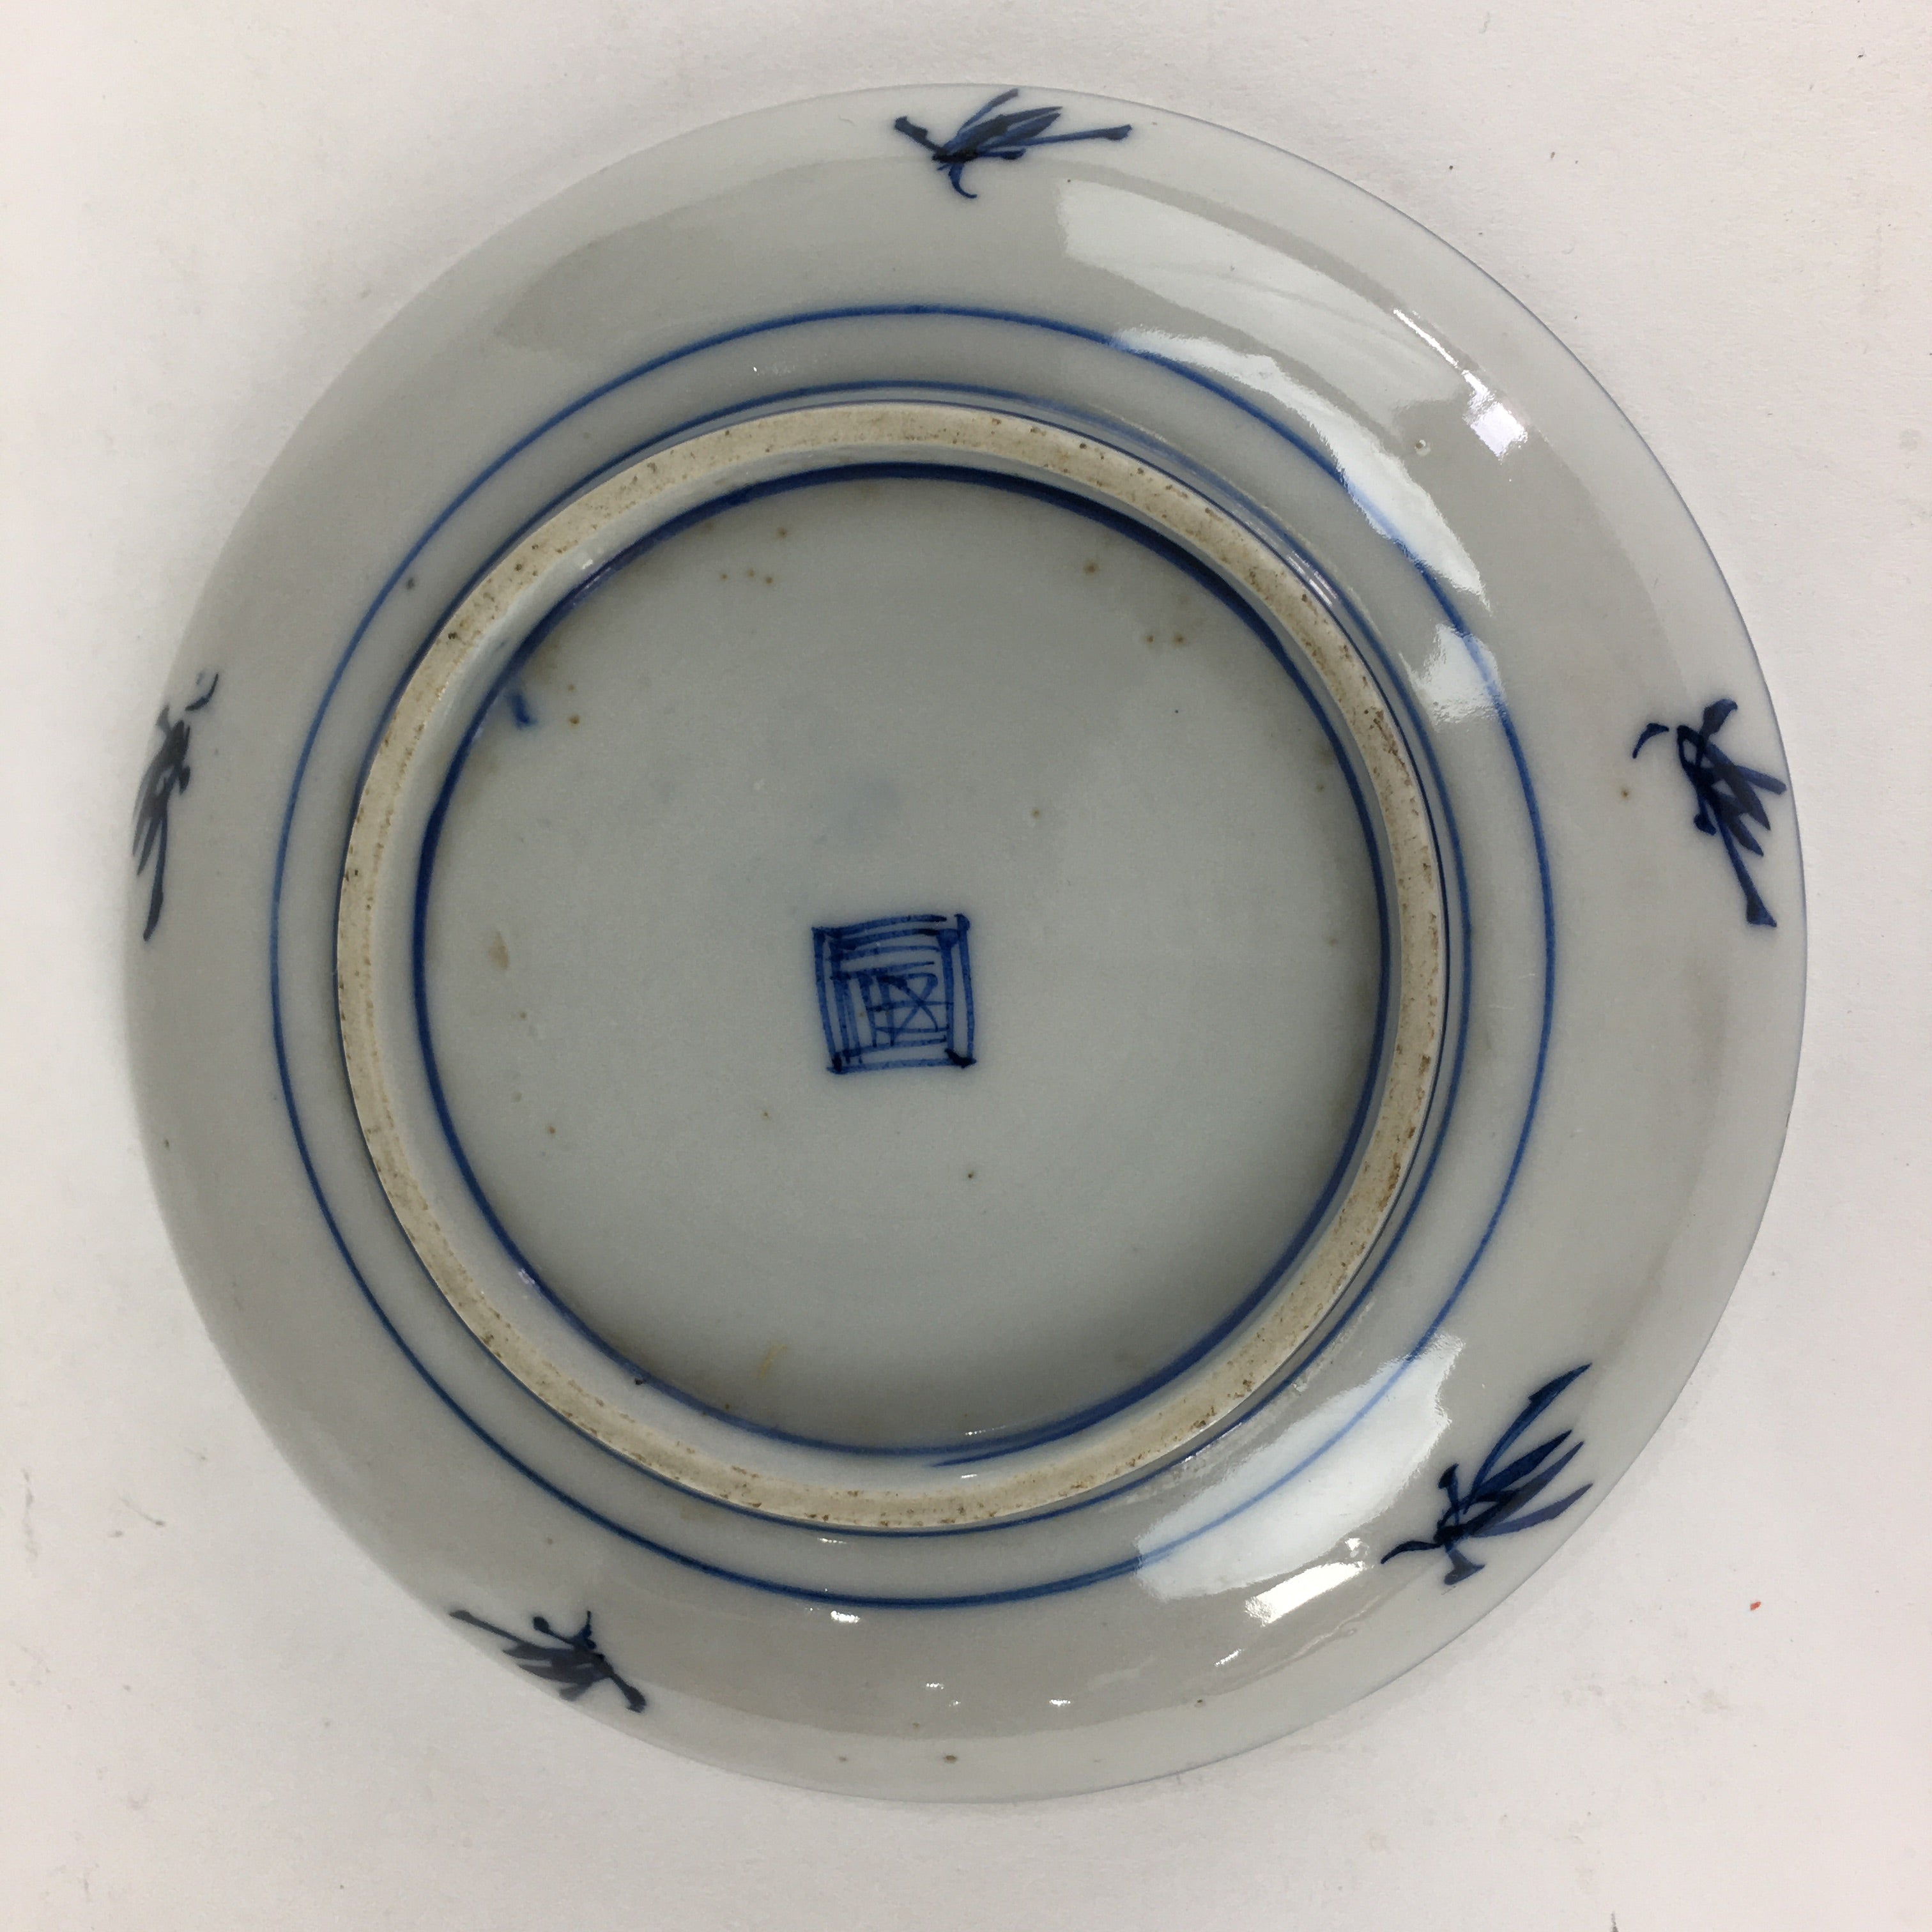 Japanese Porcelain Small Plate Kozara Vtg Blue Flower Dandelion Kozara PP801